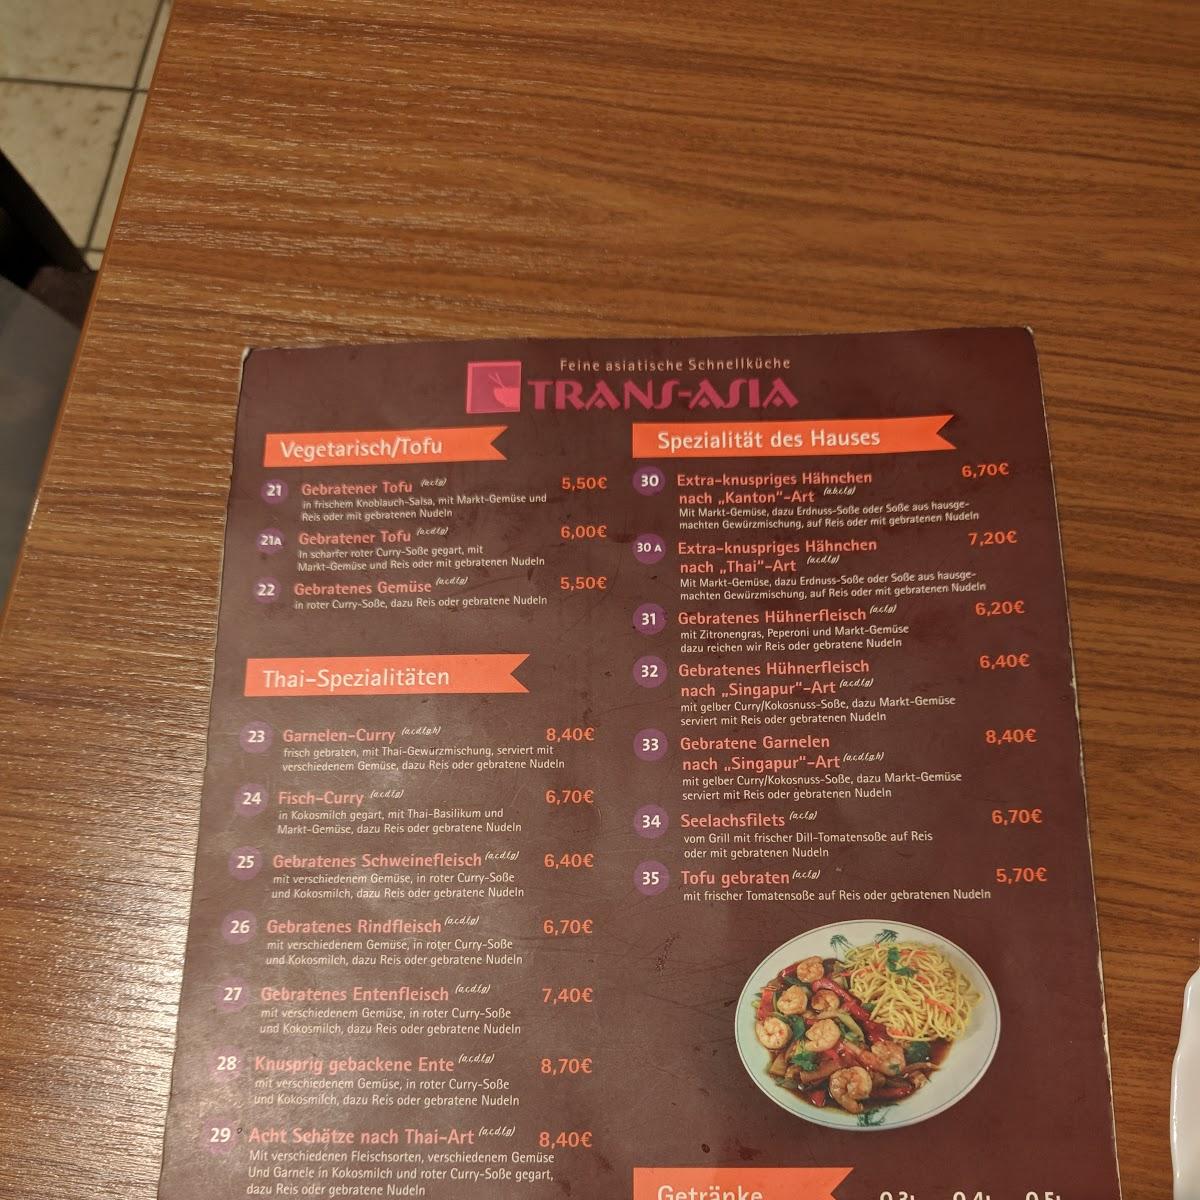 Restaurant "Trans-Asia" in Darmstadt